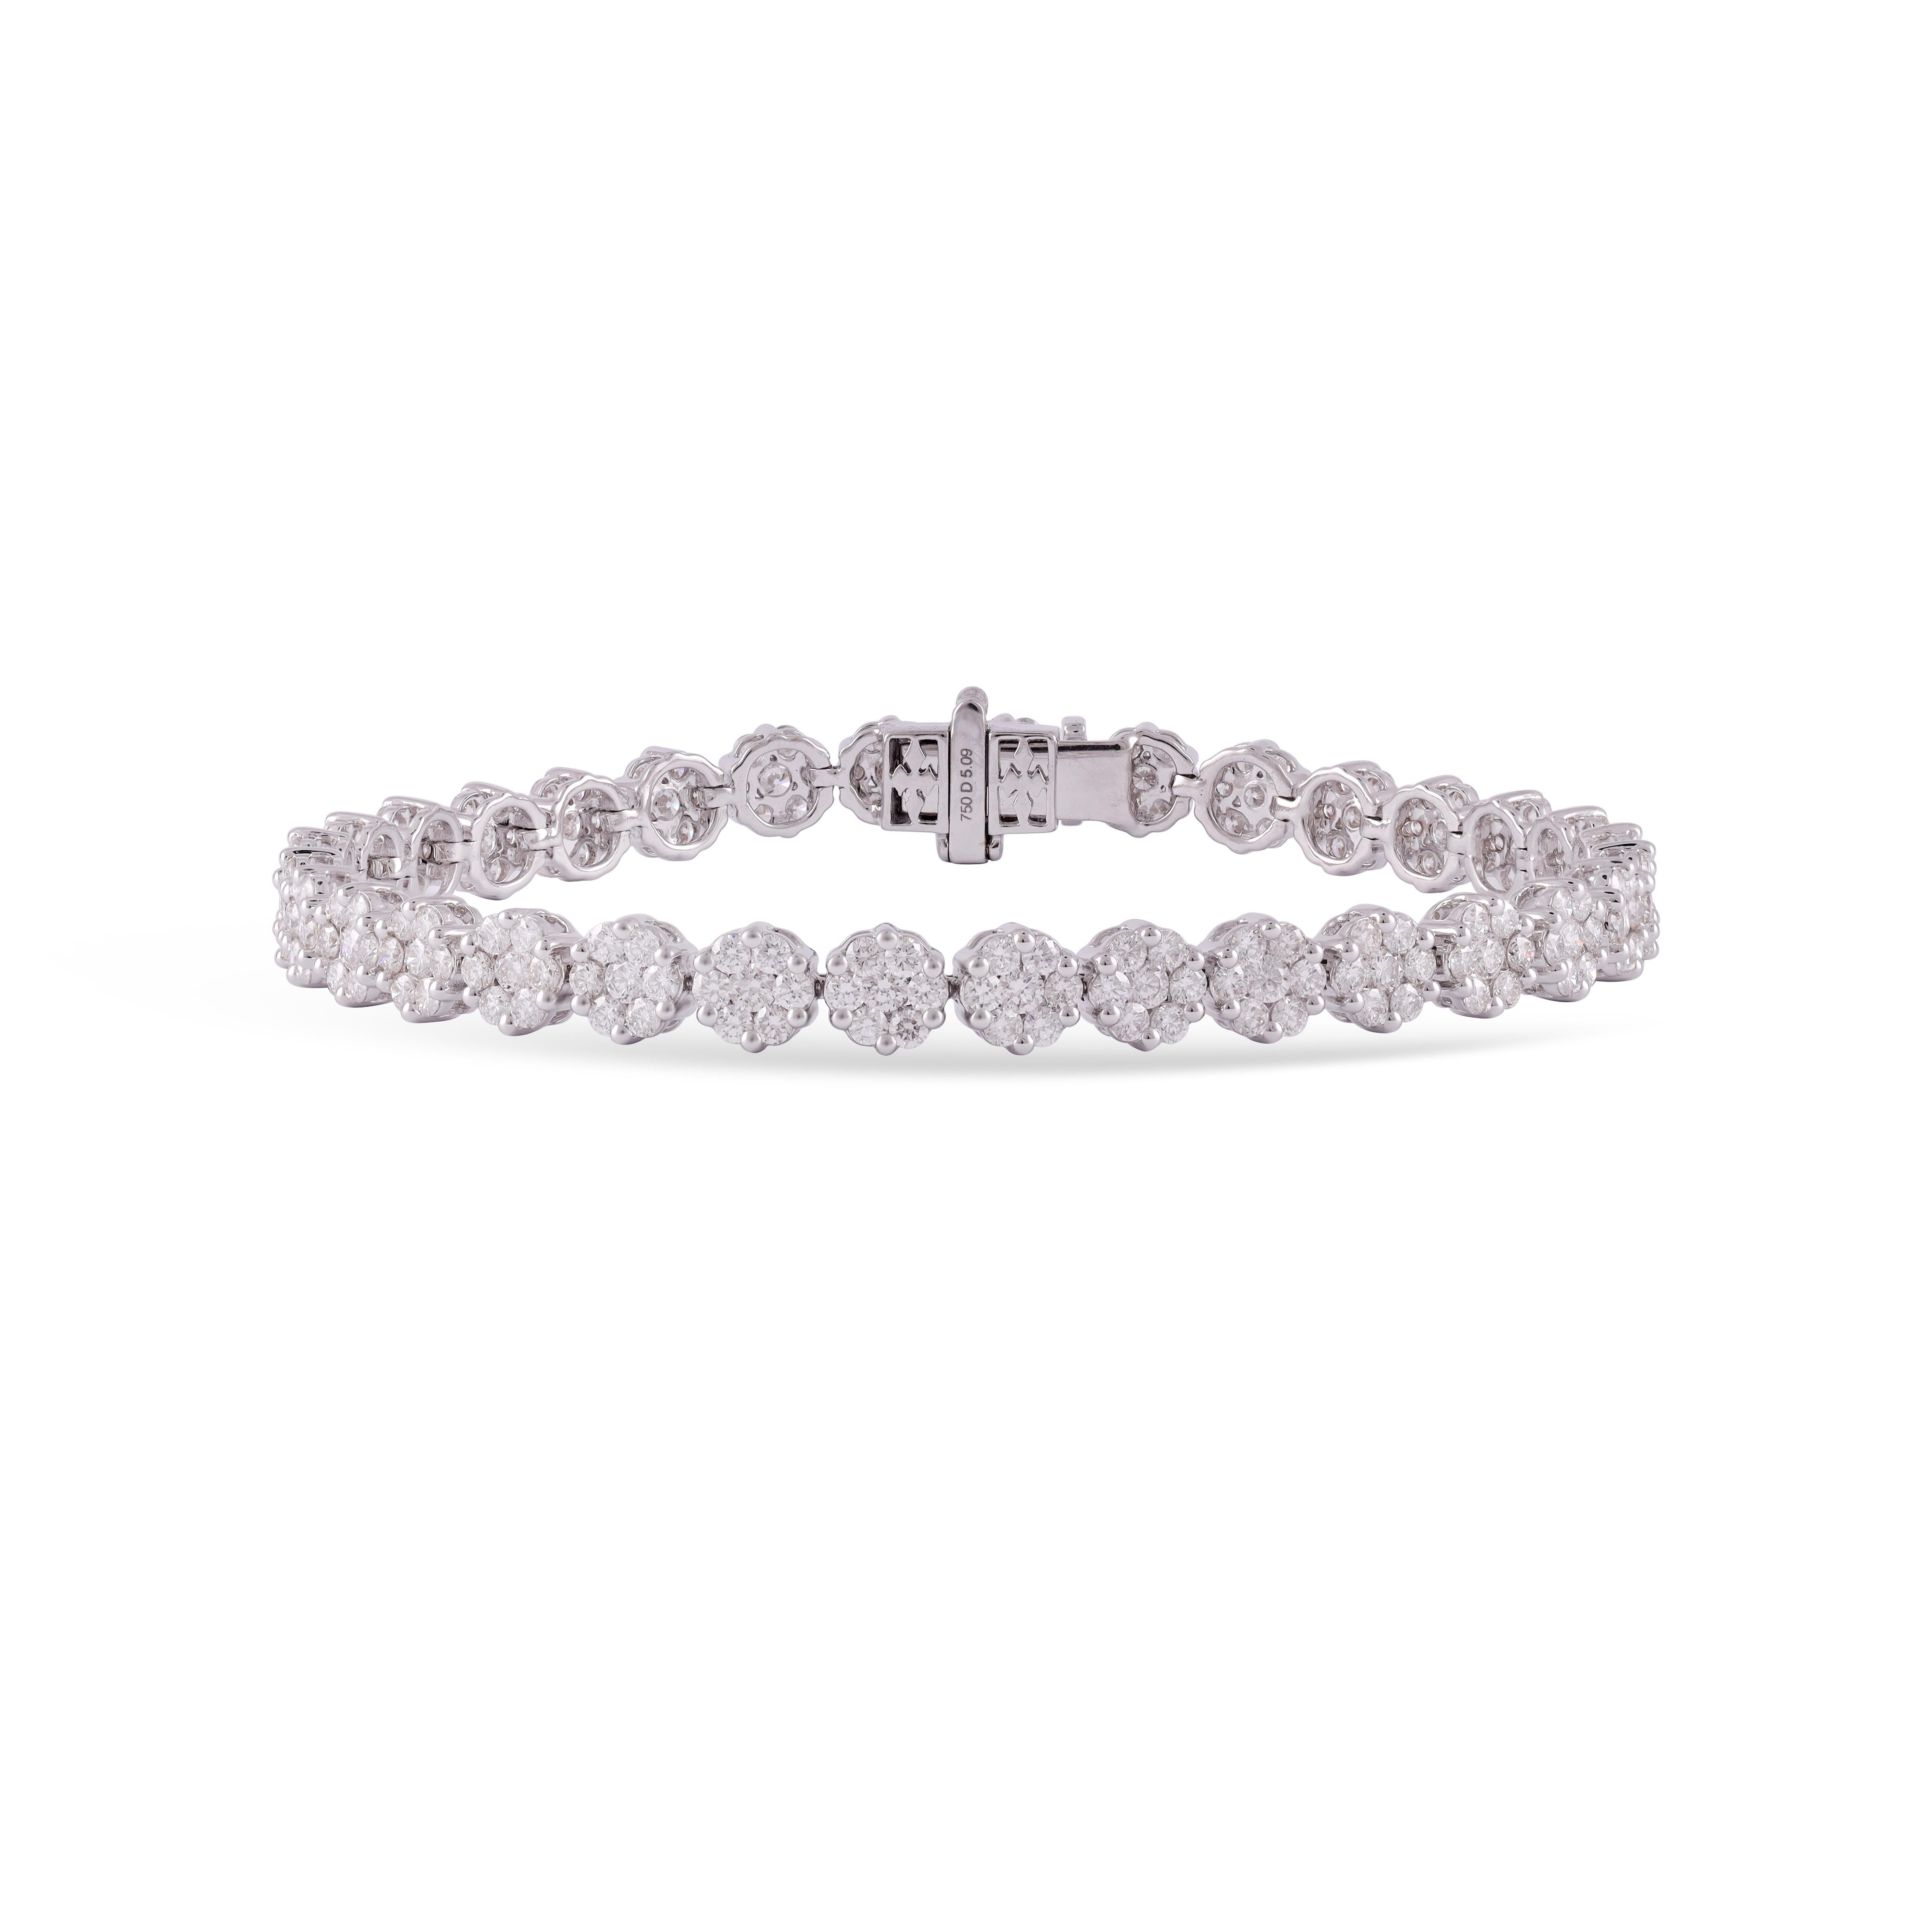 Il s'agit d'un élégant Diamant   Le bracelet comporte 224 pièces de diamant de taille princesse  5,09 carats ce bracelet entièrement réalisé en or blanc 18 carats est un bracelet de tennis classique.

taille - 7